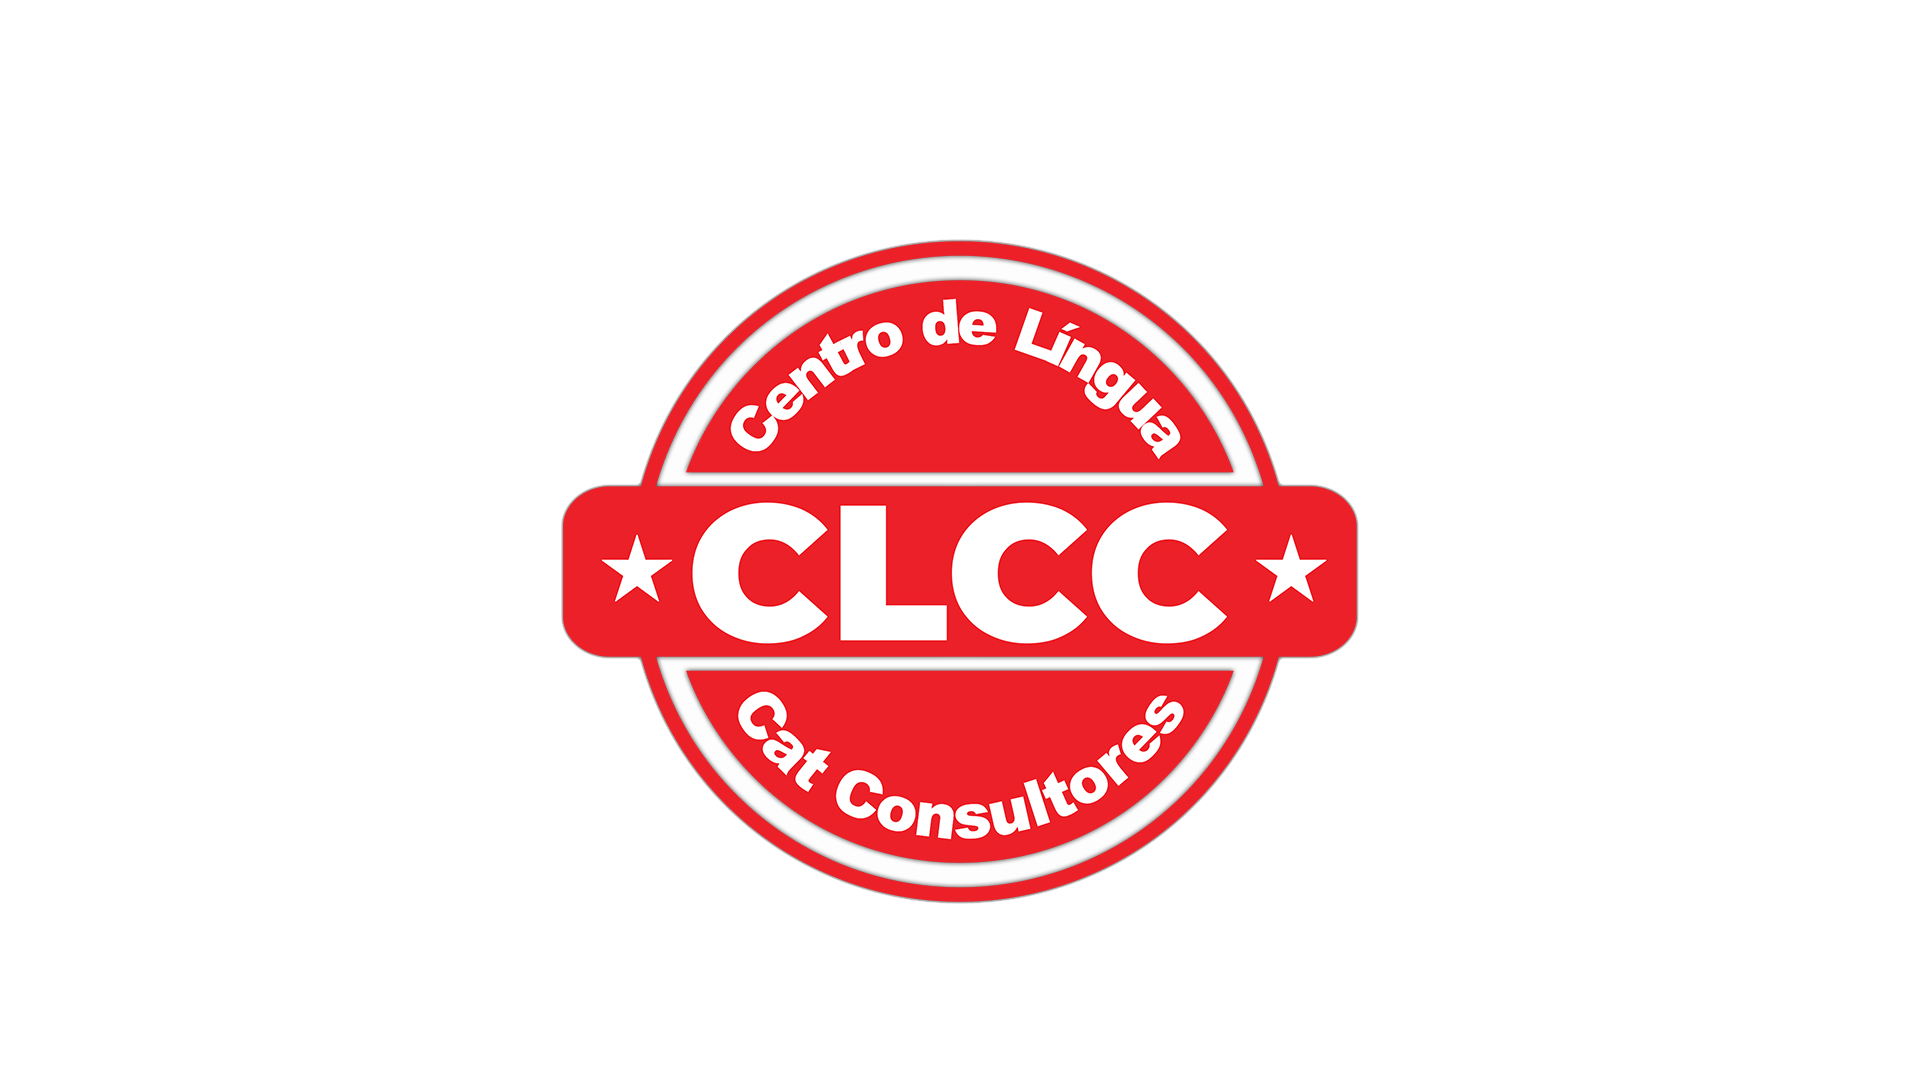 CLCC